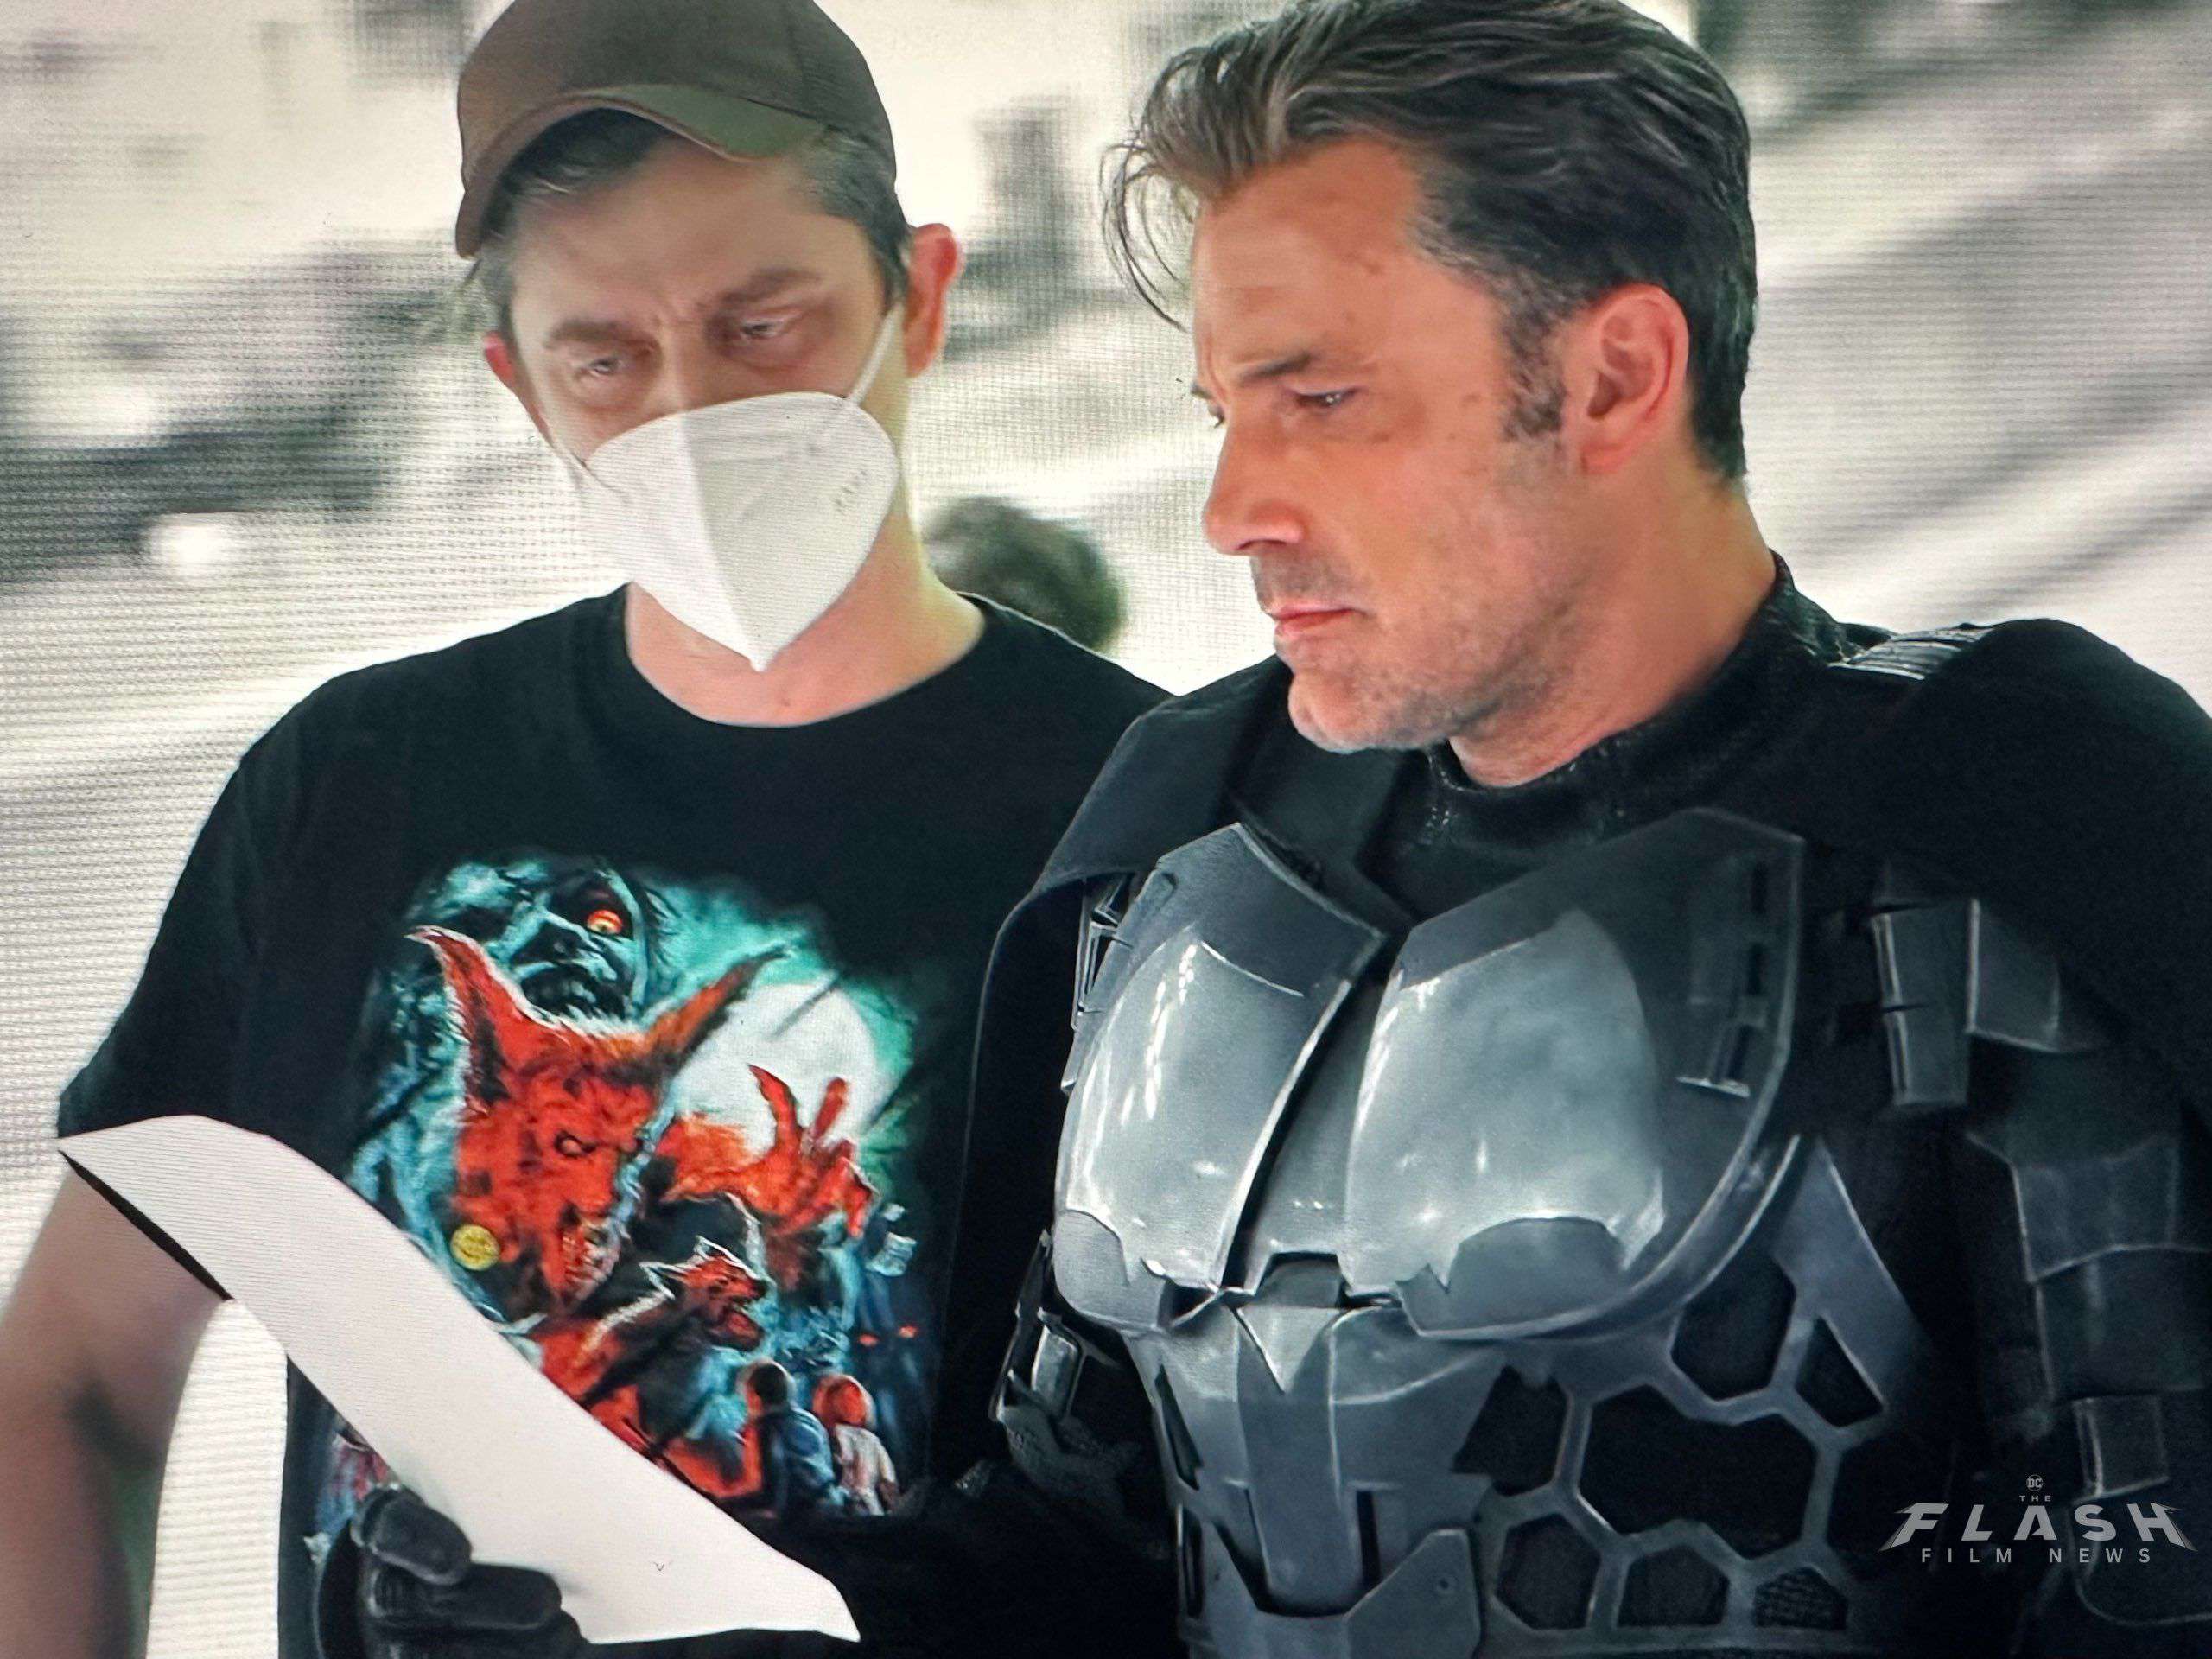 بن افلک در نقش بتمن در حال صحبت با اندی موشیاتی در پشت صحنه سکانس متفاوت پس از پایان فیلم The Flash 